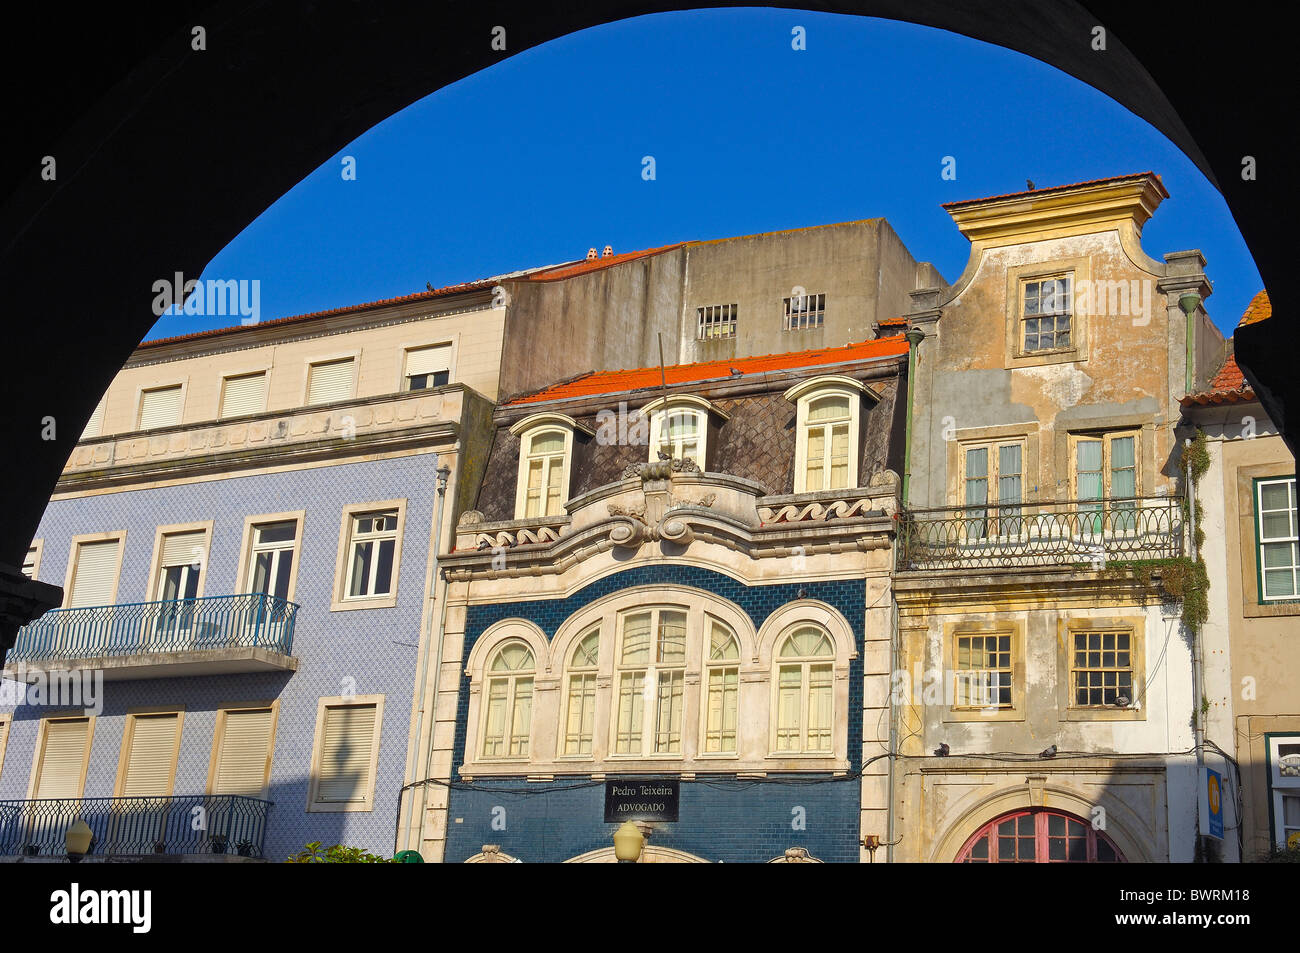 Old town, Aveiro, Beiras region, Portugal Stock Photo